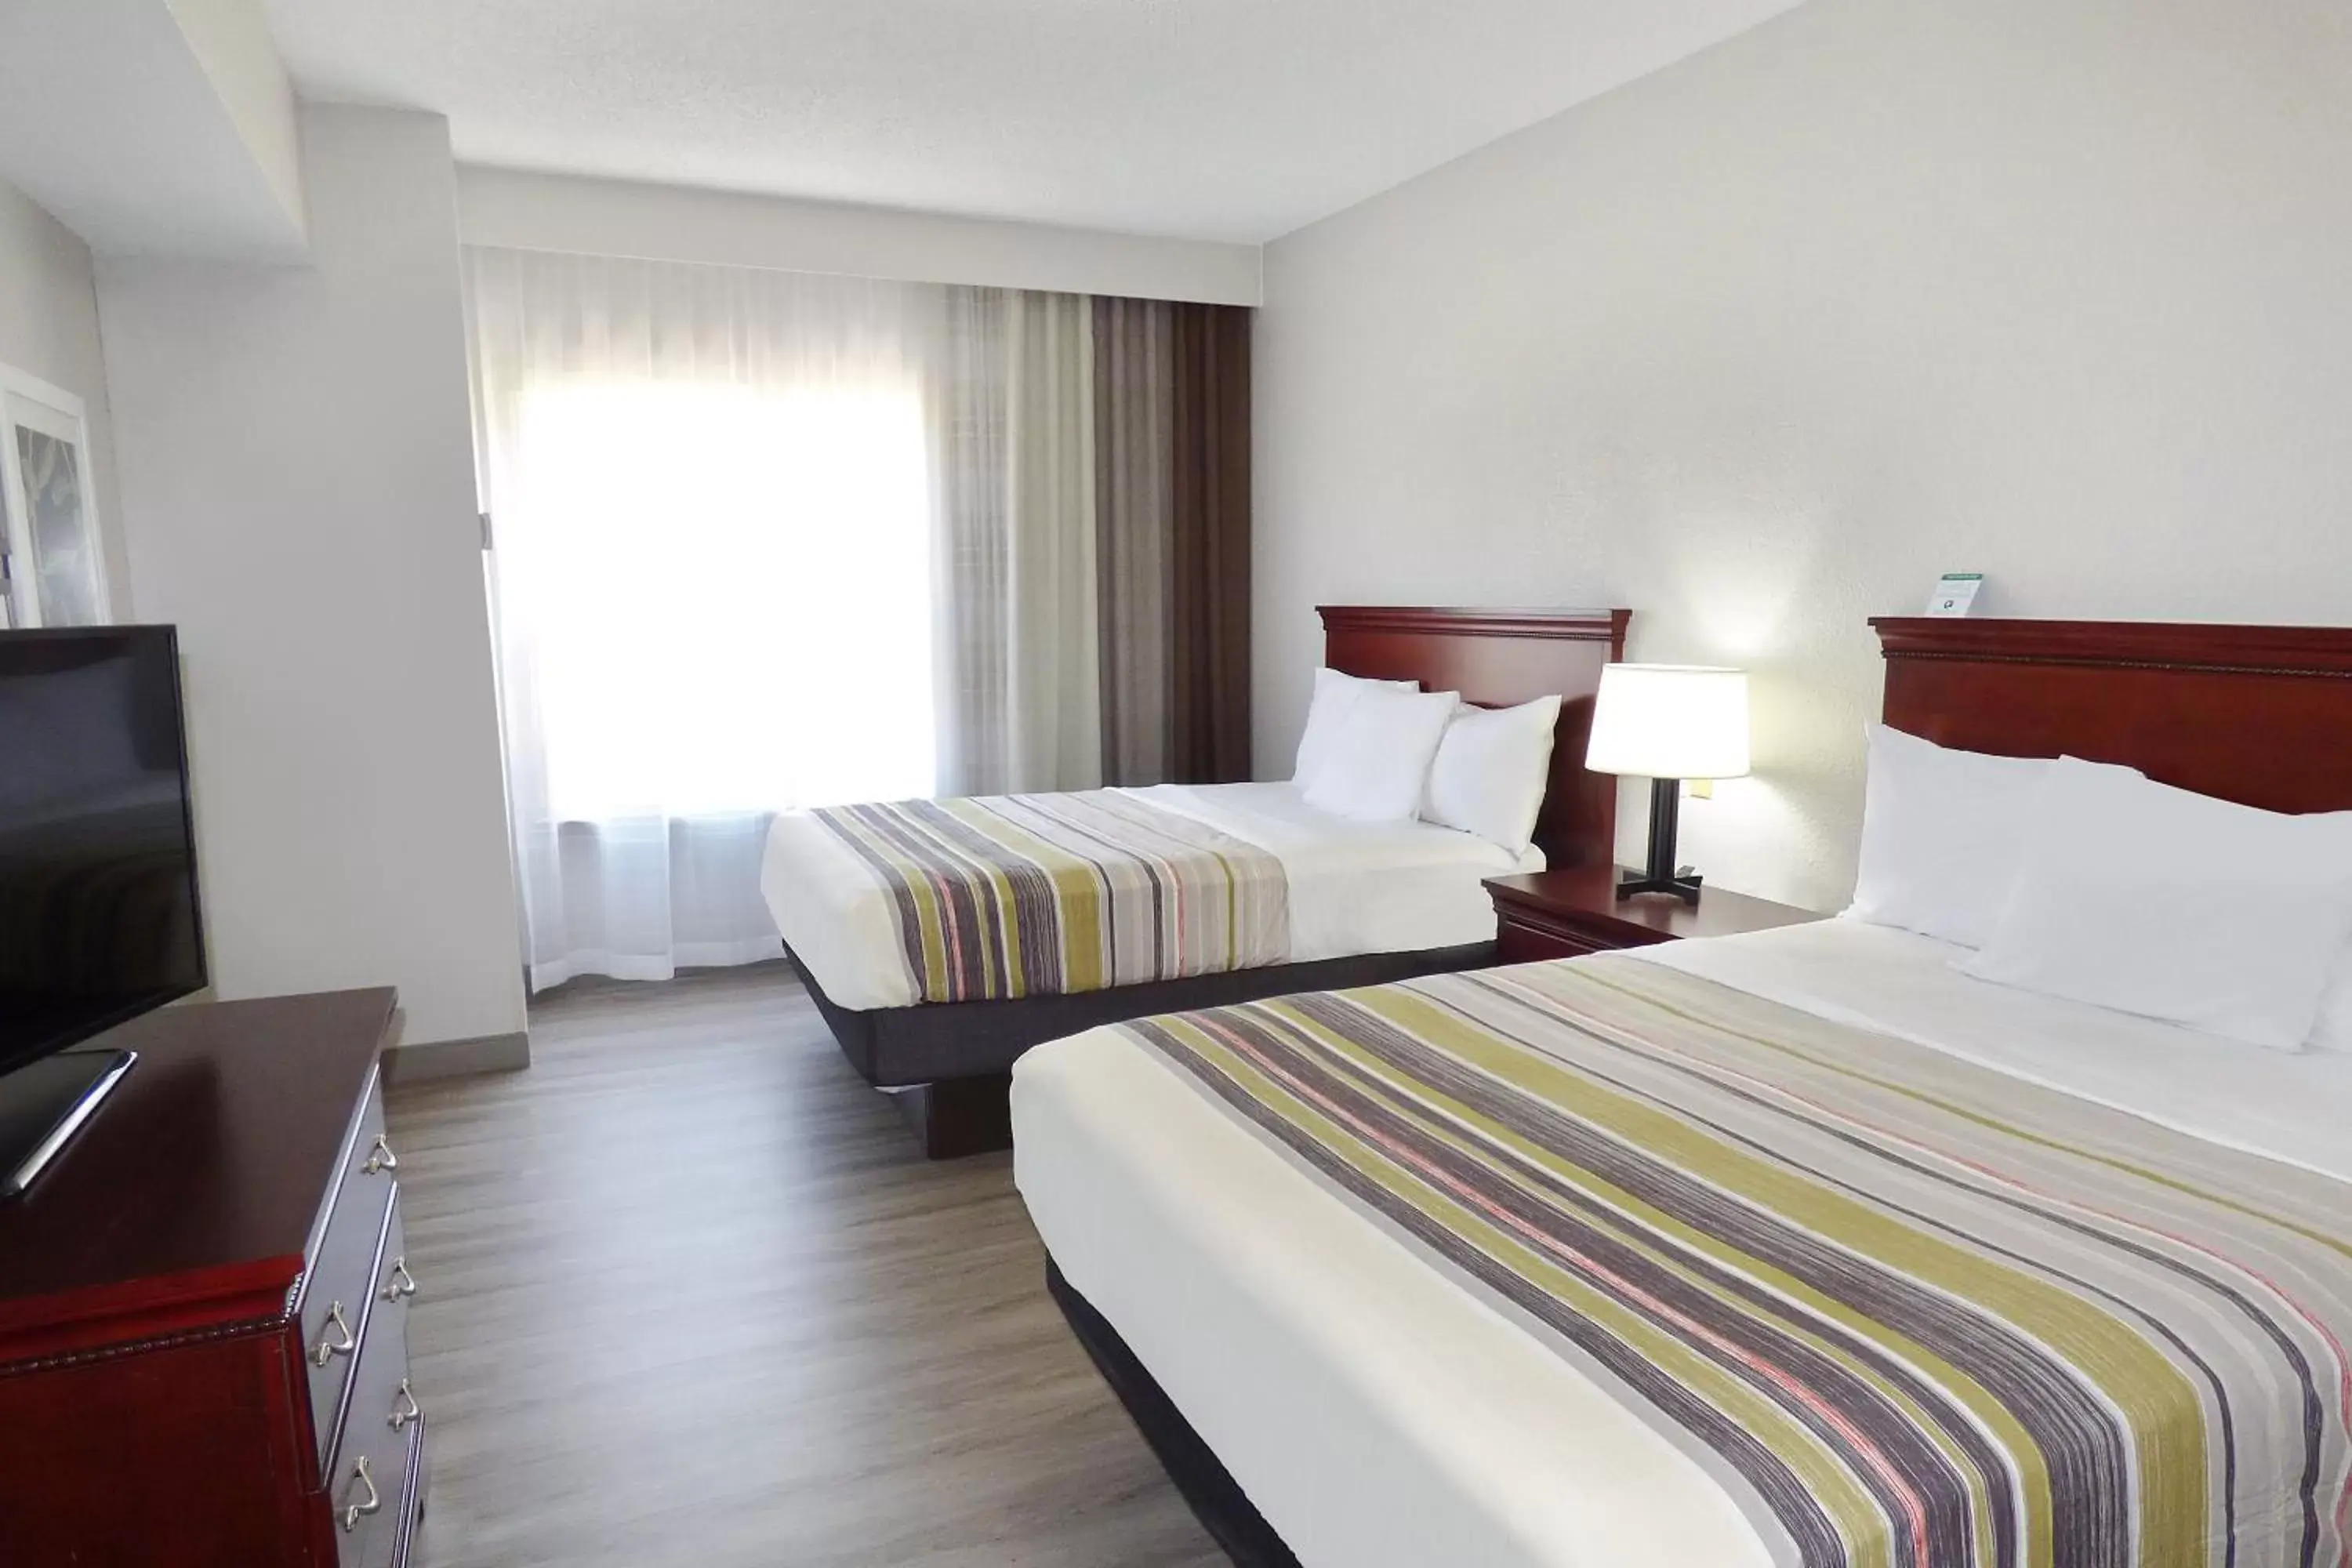 Bedroom, Bed in Country Inn & Suites by Radisson, Biloxi-Ocean Springs, MS